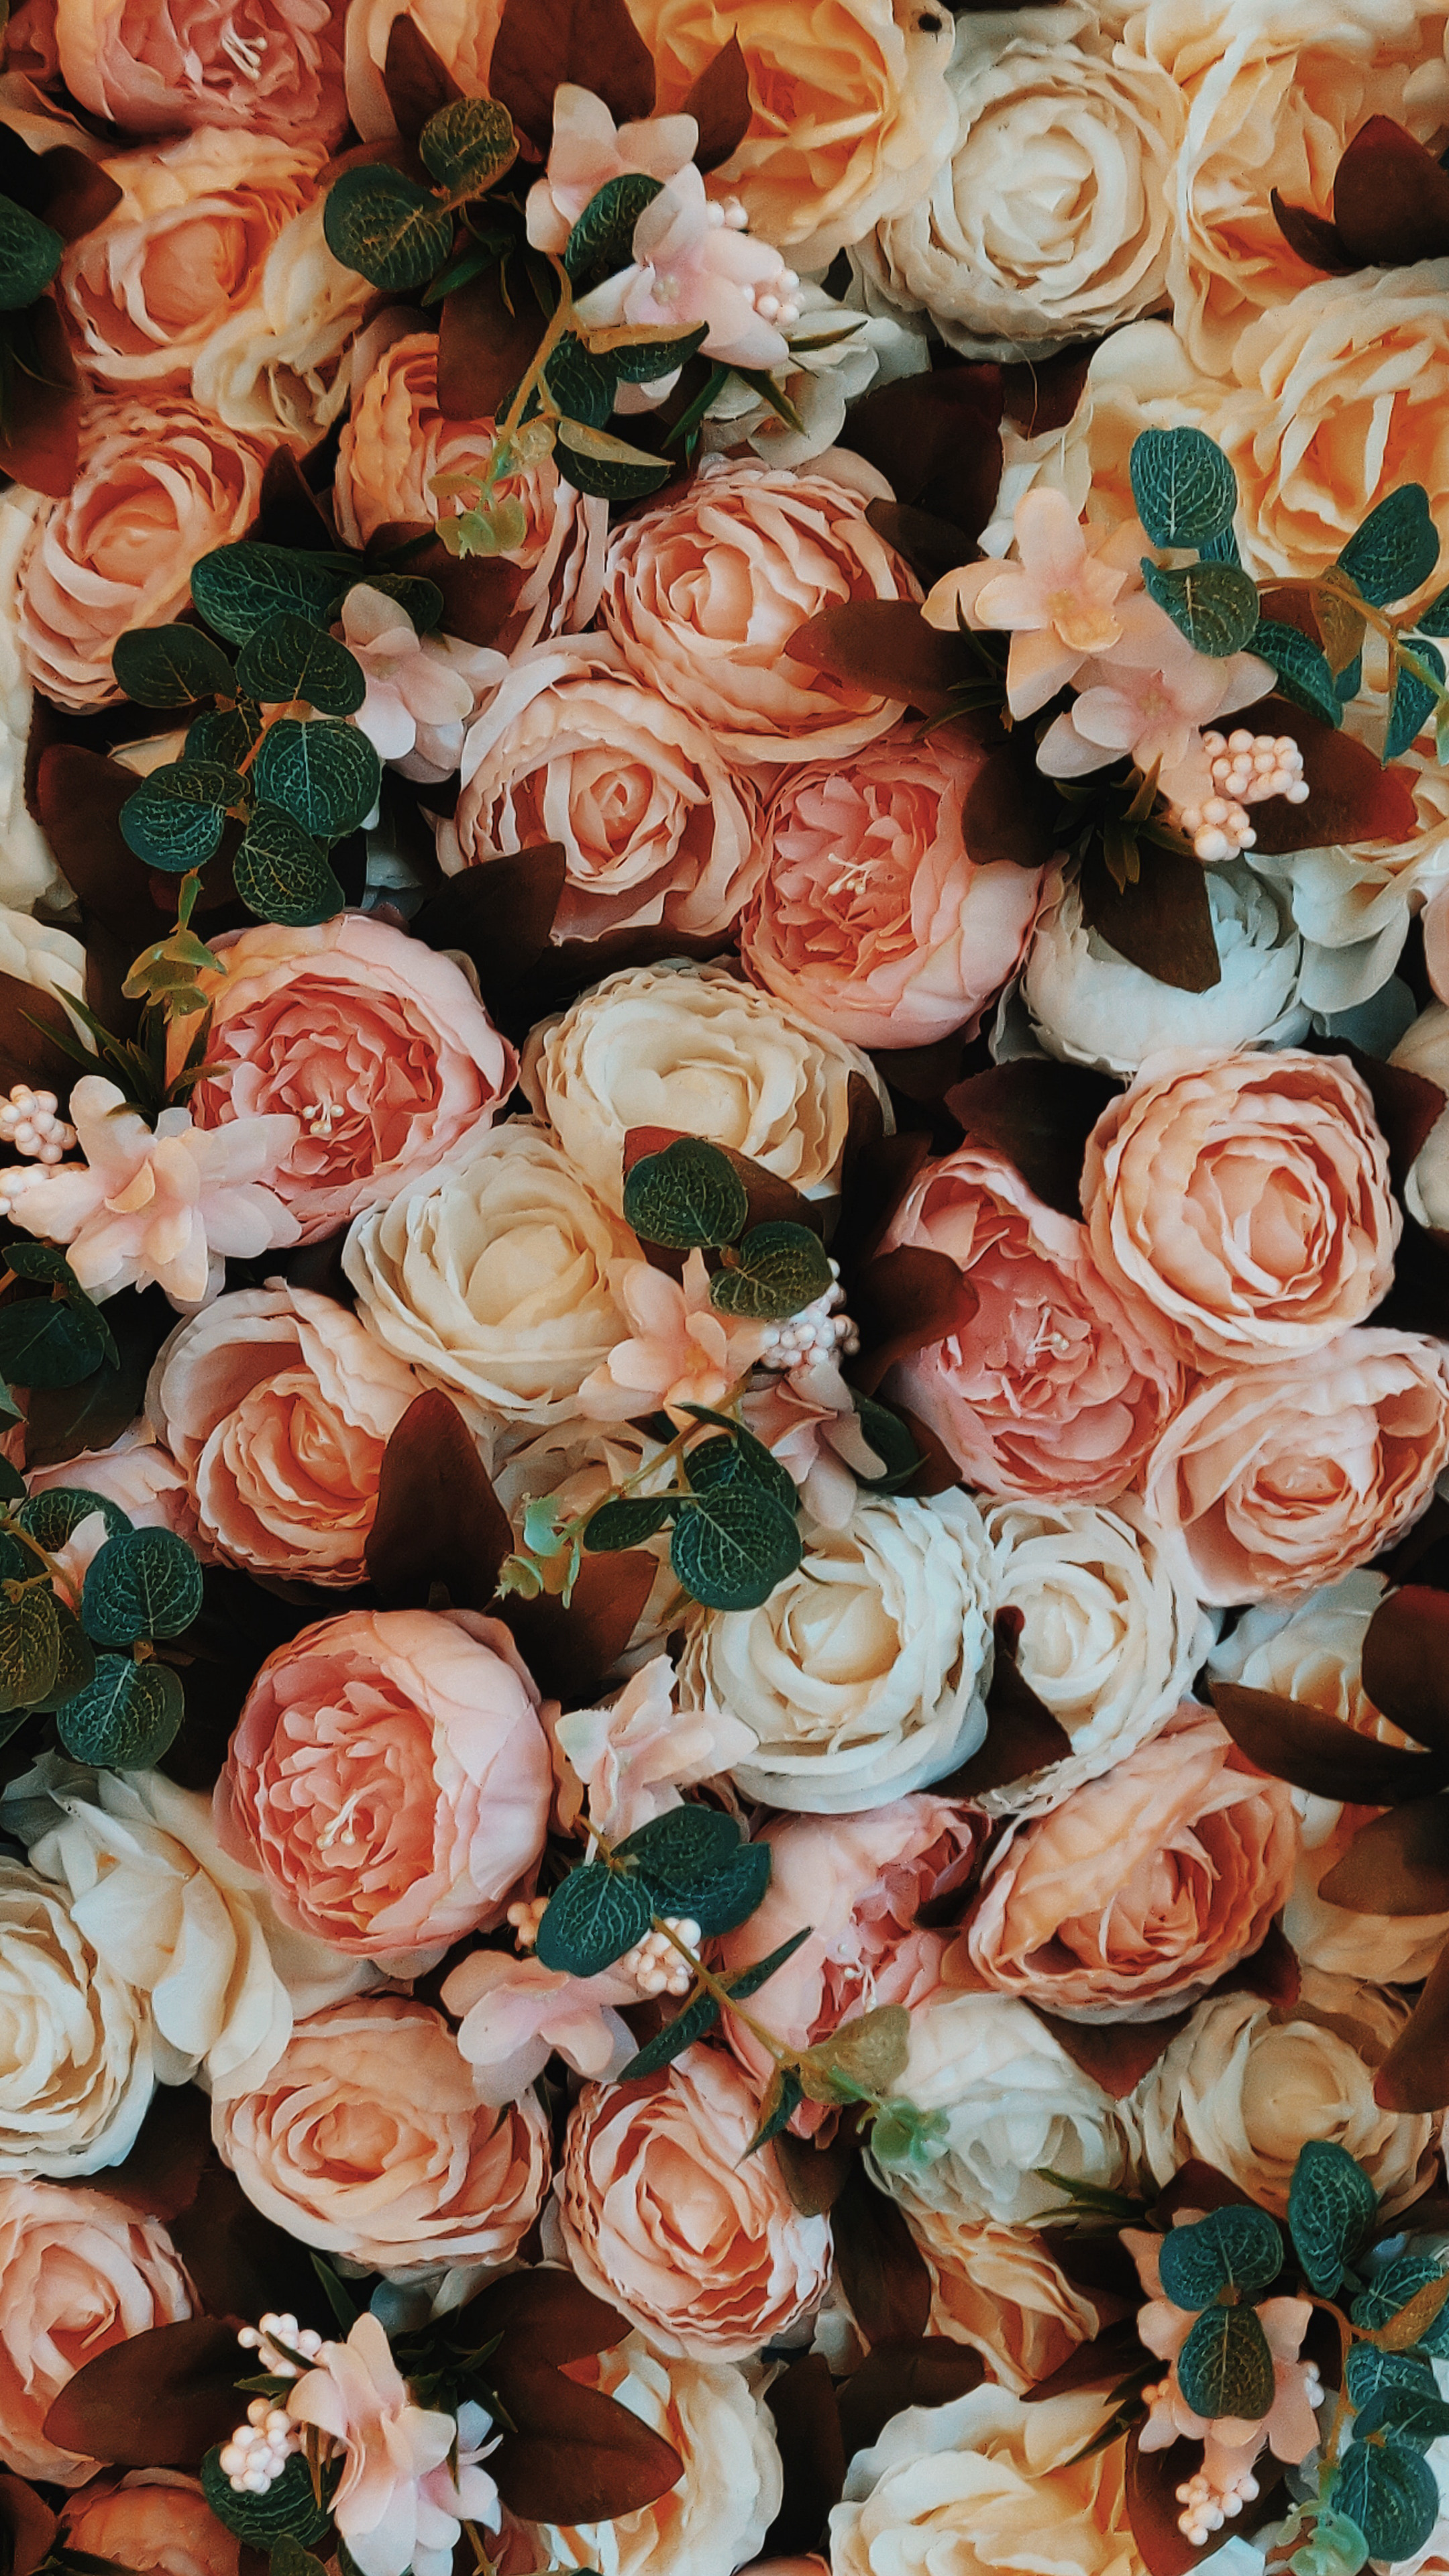 满屏的橙白色玫瑰浪漫的手机壁纸